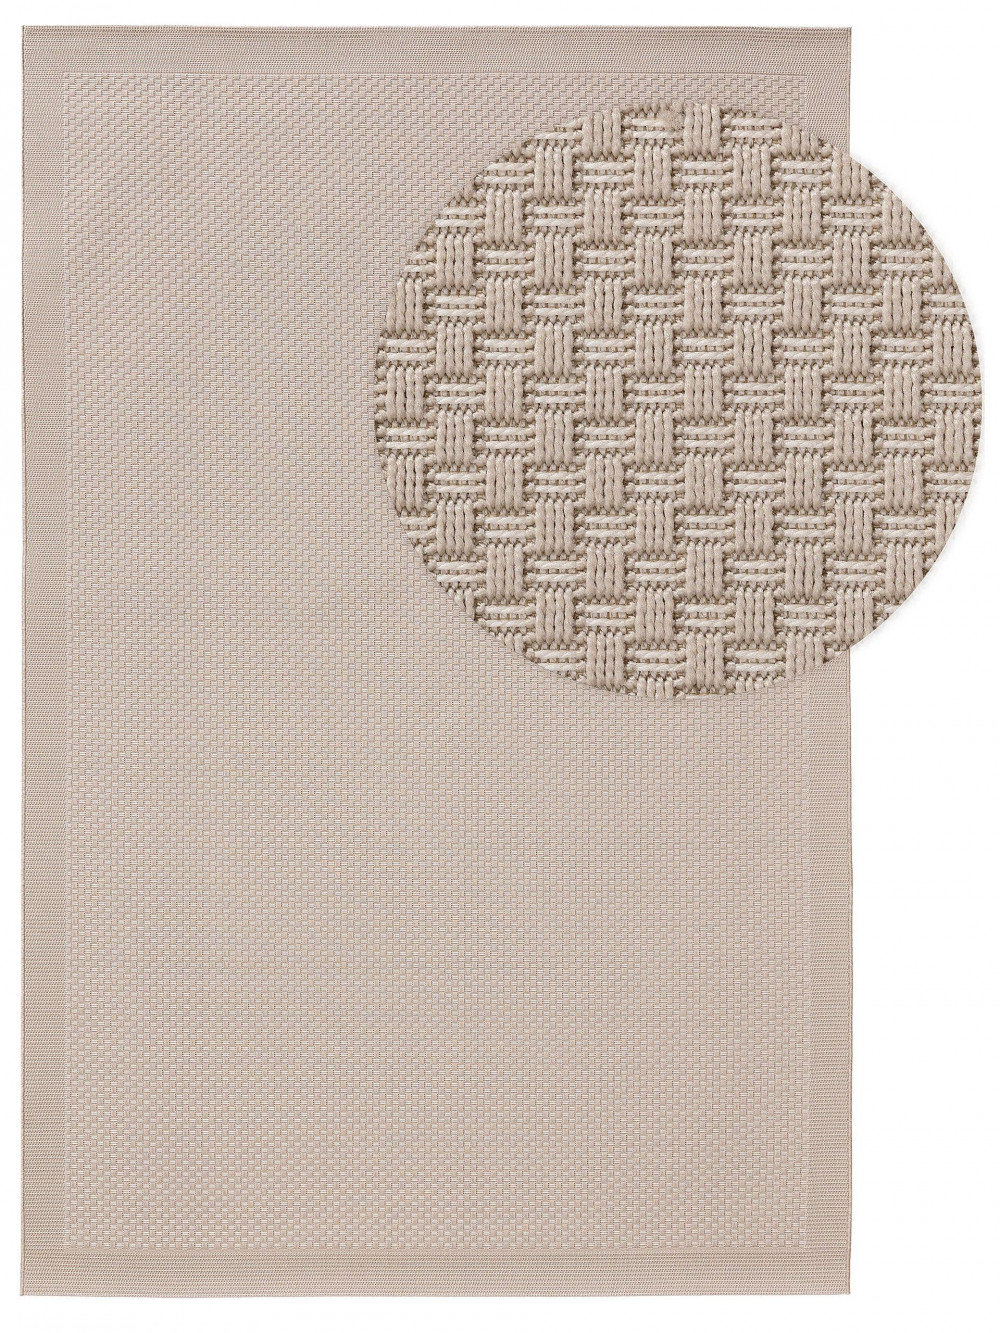 Kül- és beltéri szőnyeg Naoto White 140x200 cm